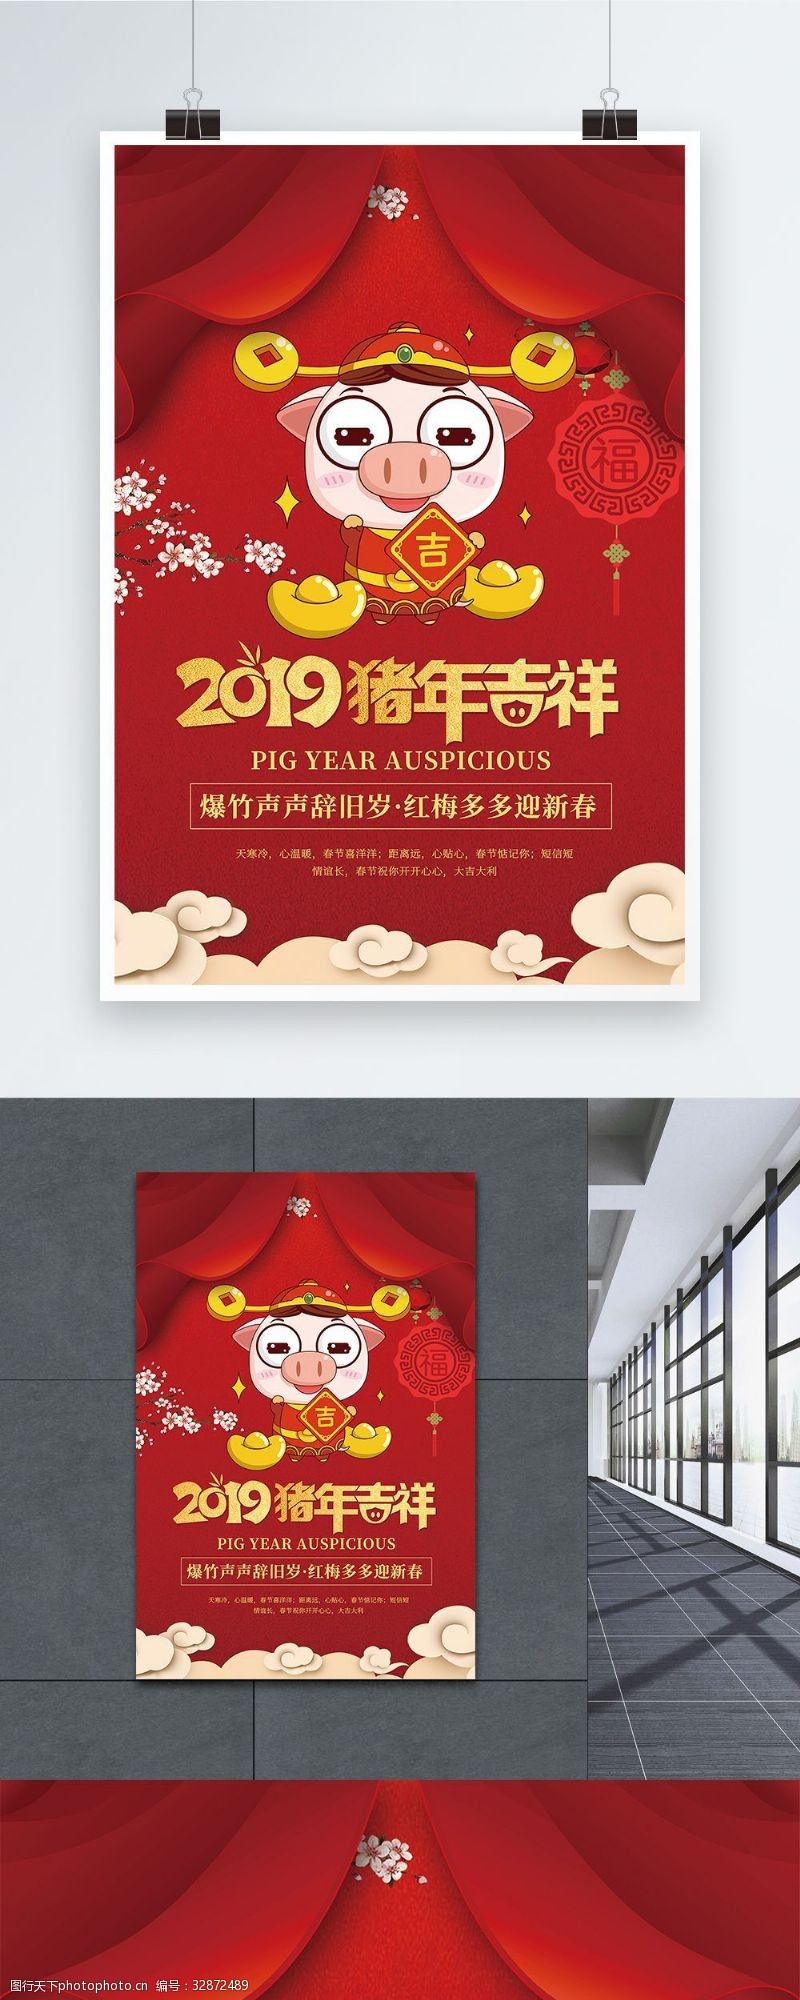 猪年吉祥红色2019猪年大吉海报